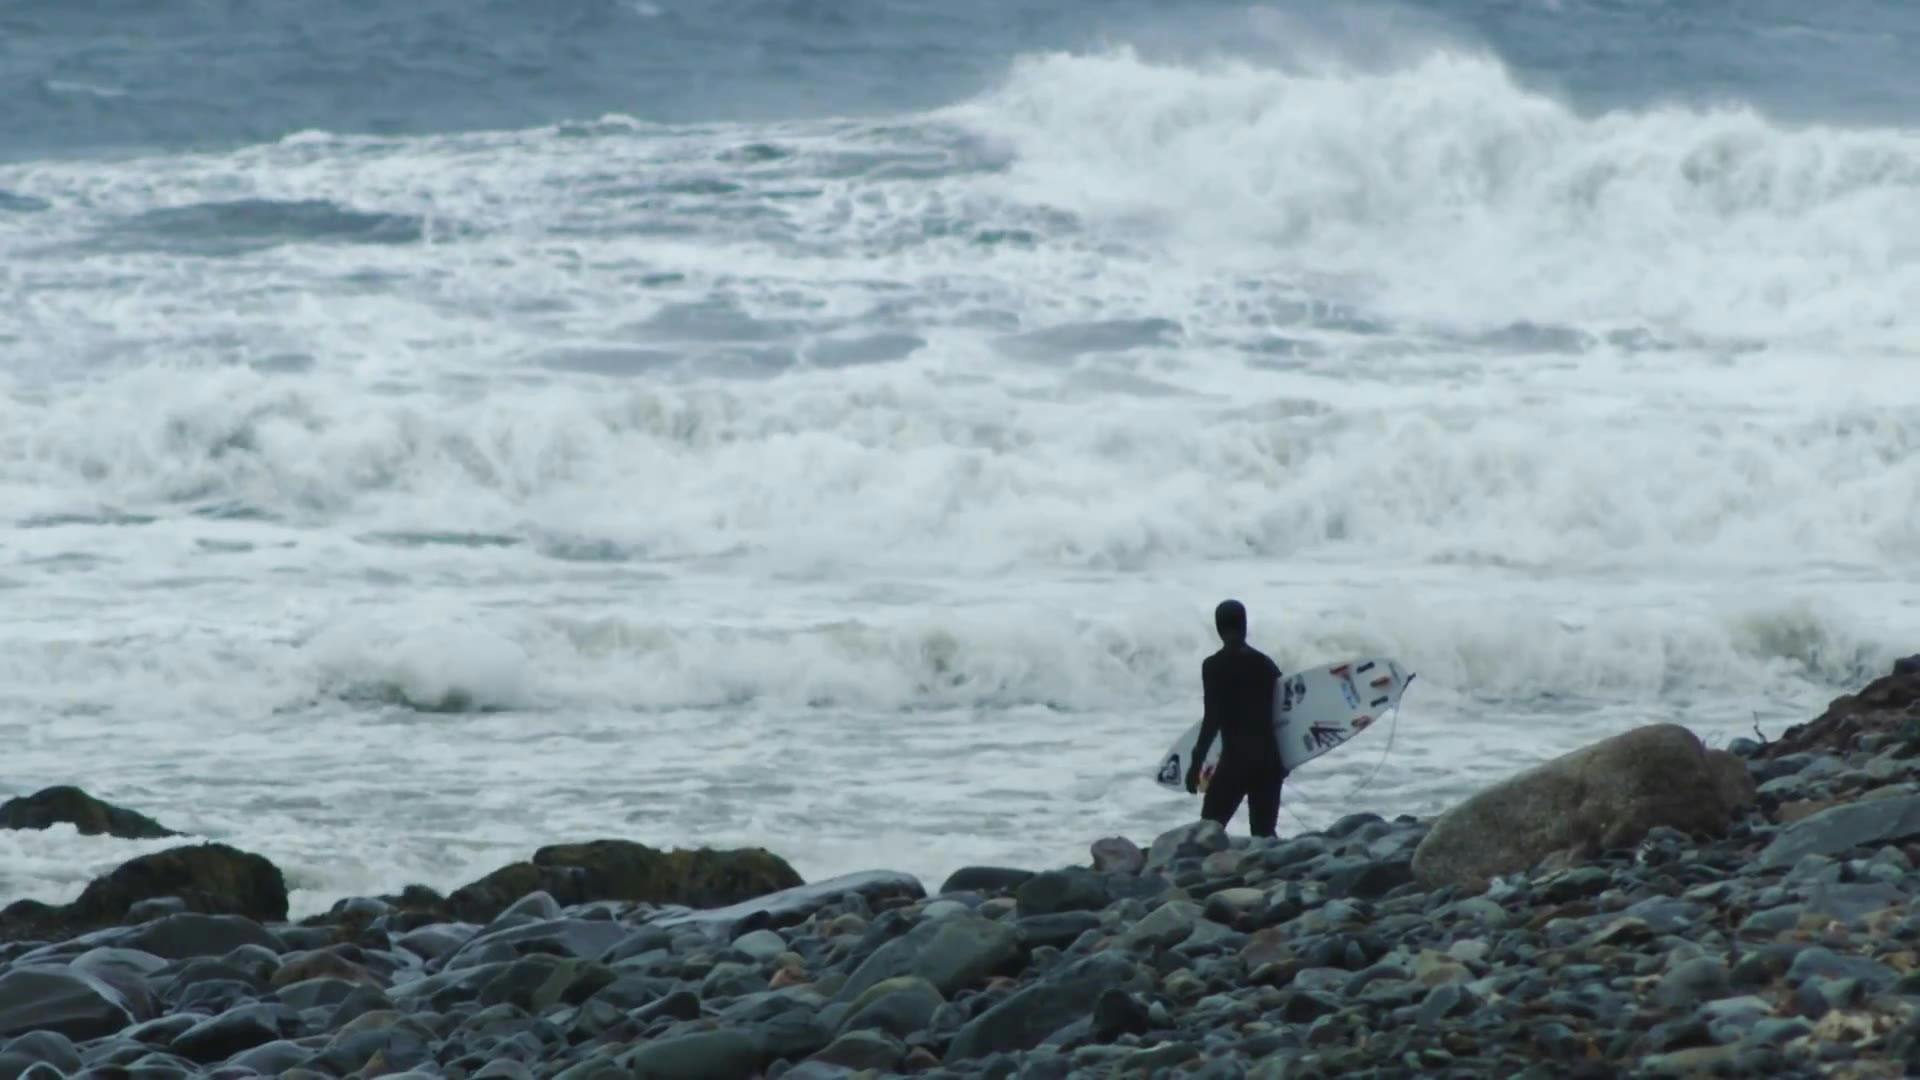 Subzero Surfing in Nova Scotia - Sally Stories Season 2